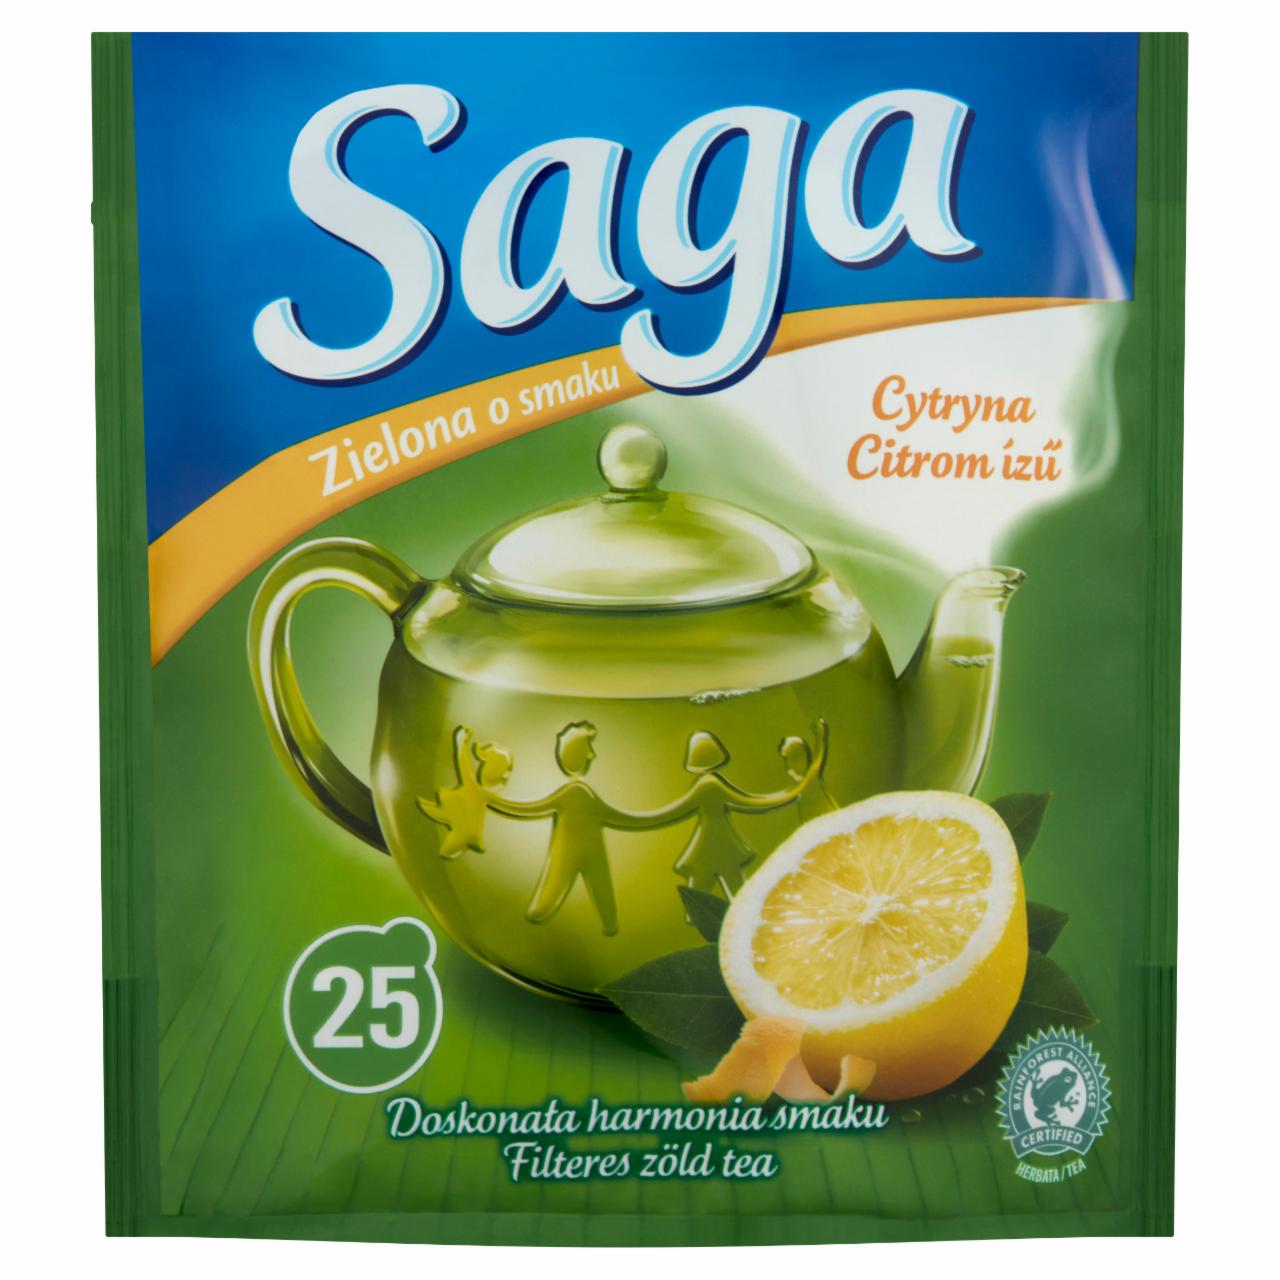 Képek - Saga citrom ízű filteres zöld tea 25 filter 32,5 g